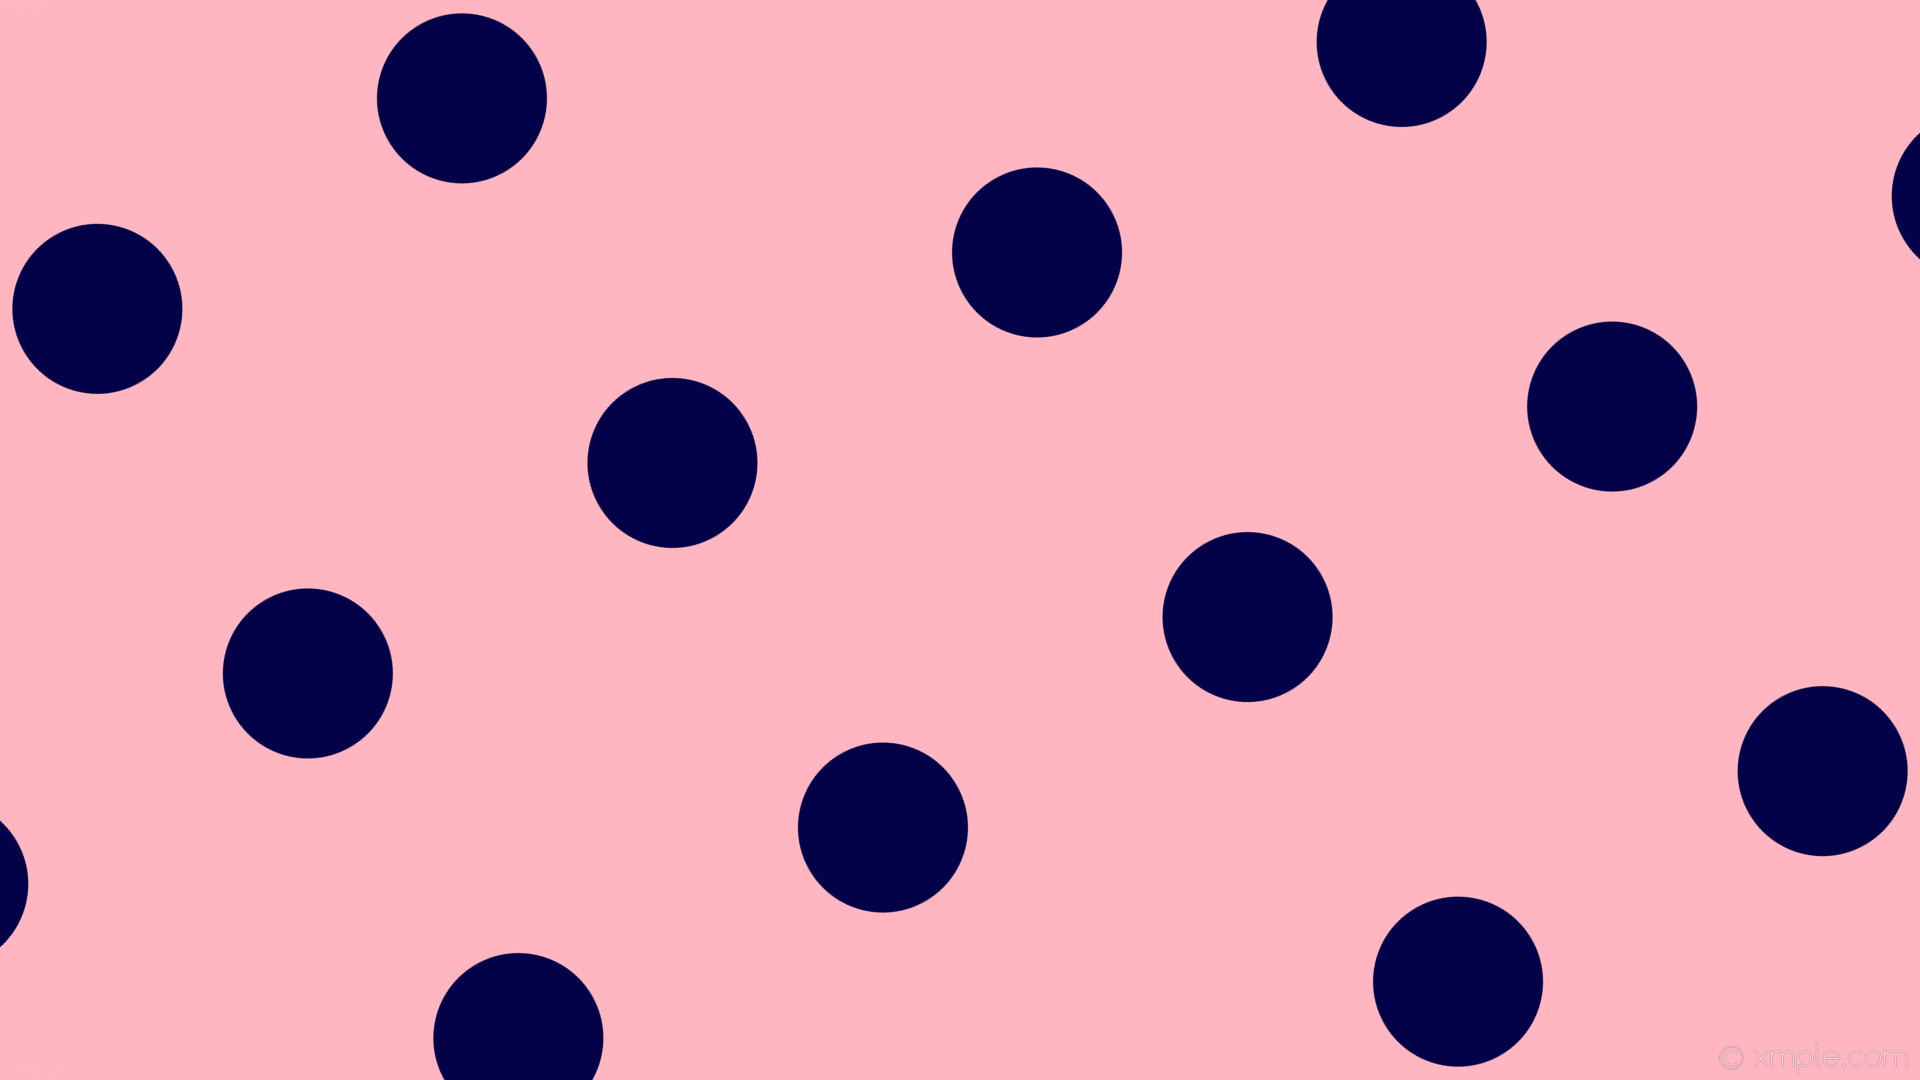 1920x1080 wallpaper pink polka dots spots blue light pink dark blue #ffb6c1 #030248  210Â°